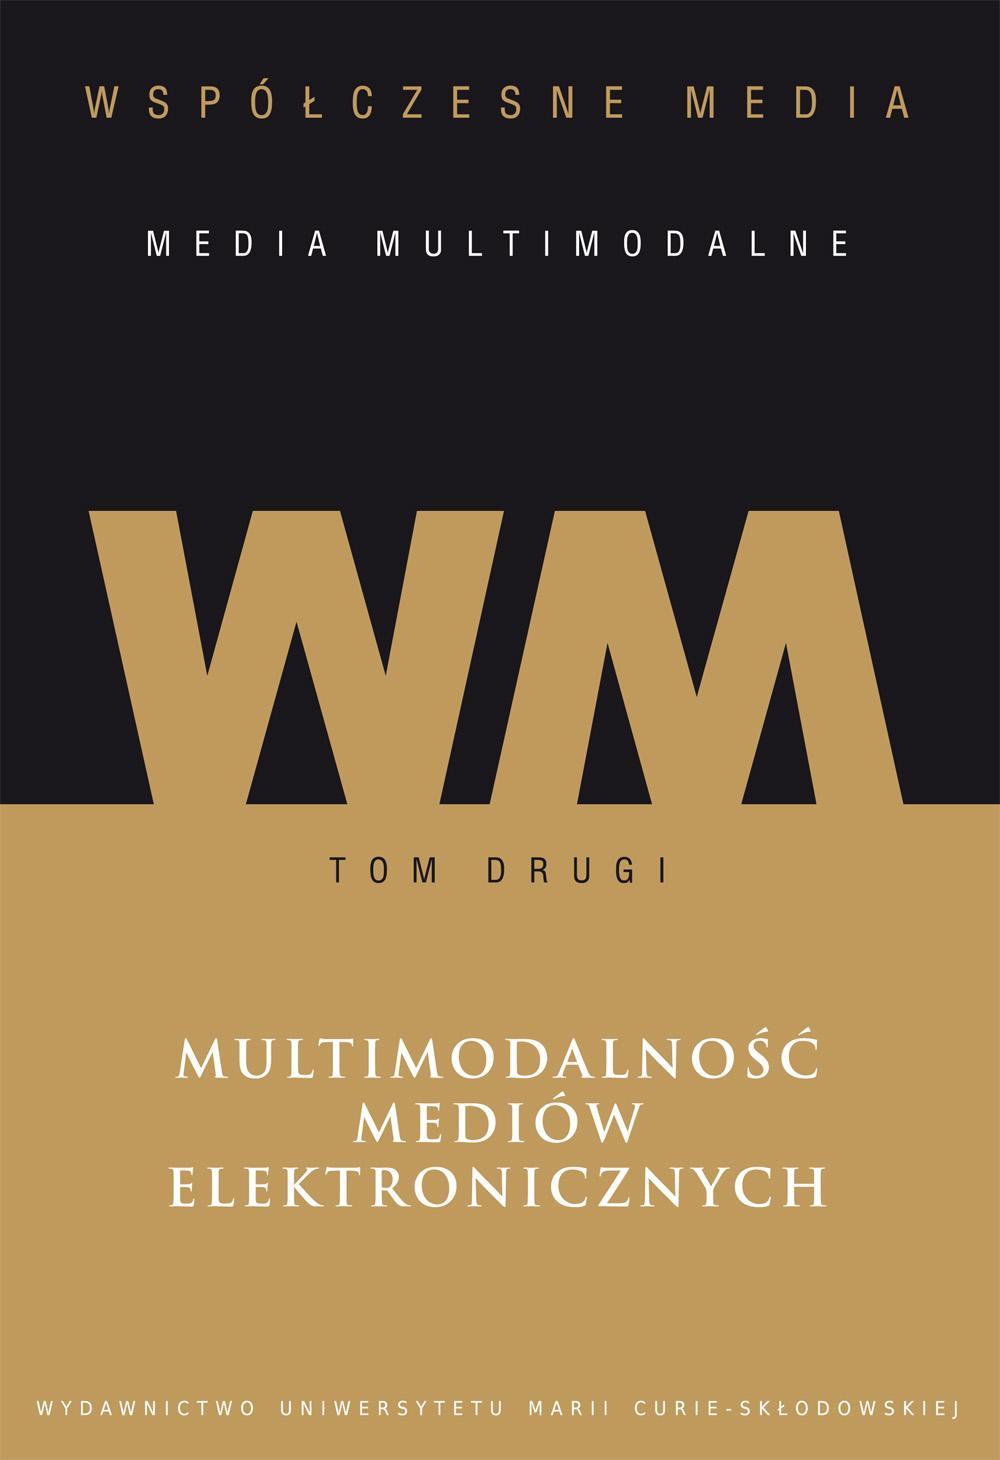 Okładka: Współczesne media – media multimodalne, t. 2: Multimodalność mediów elektronicznych